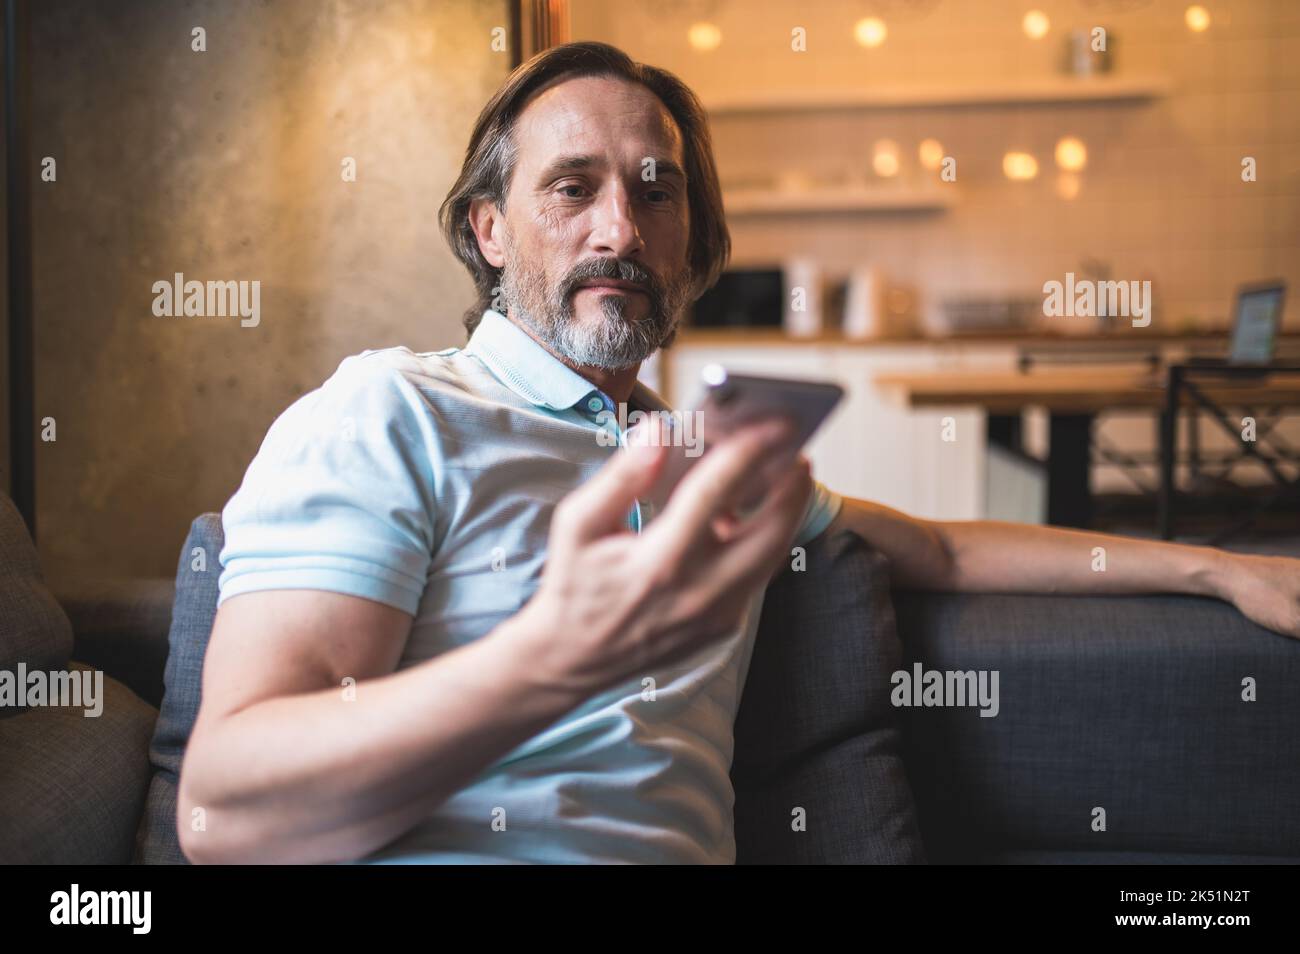 Uomo bearato seduto in poltrona acon uno smartphone in mano Foto Stock